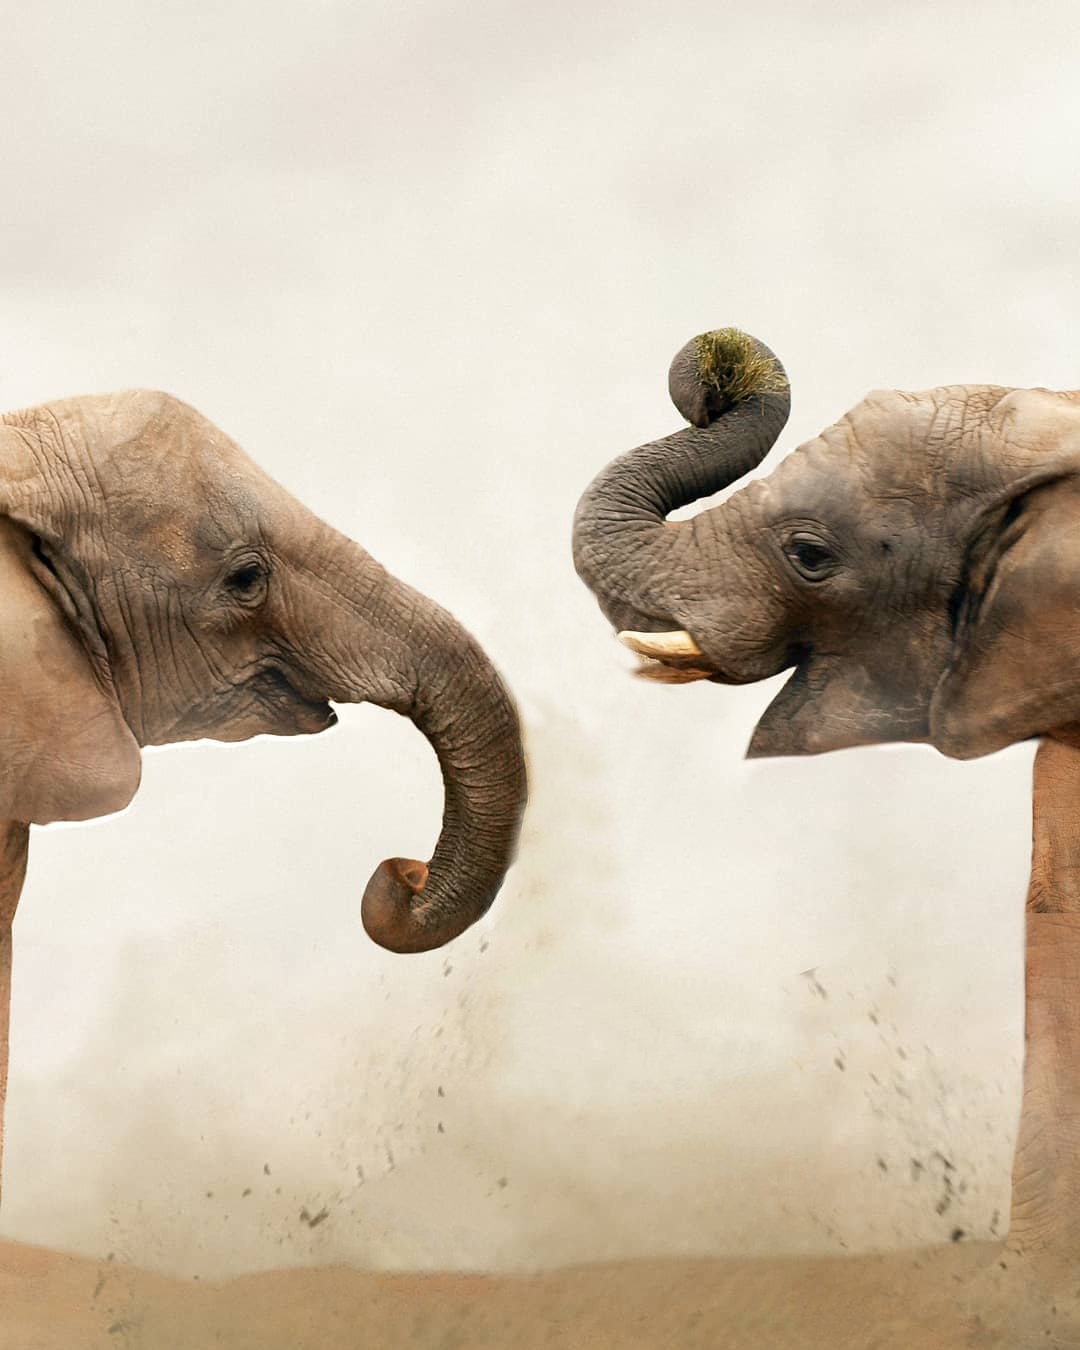 Elephant editing background